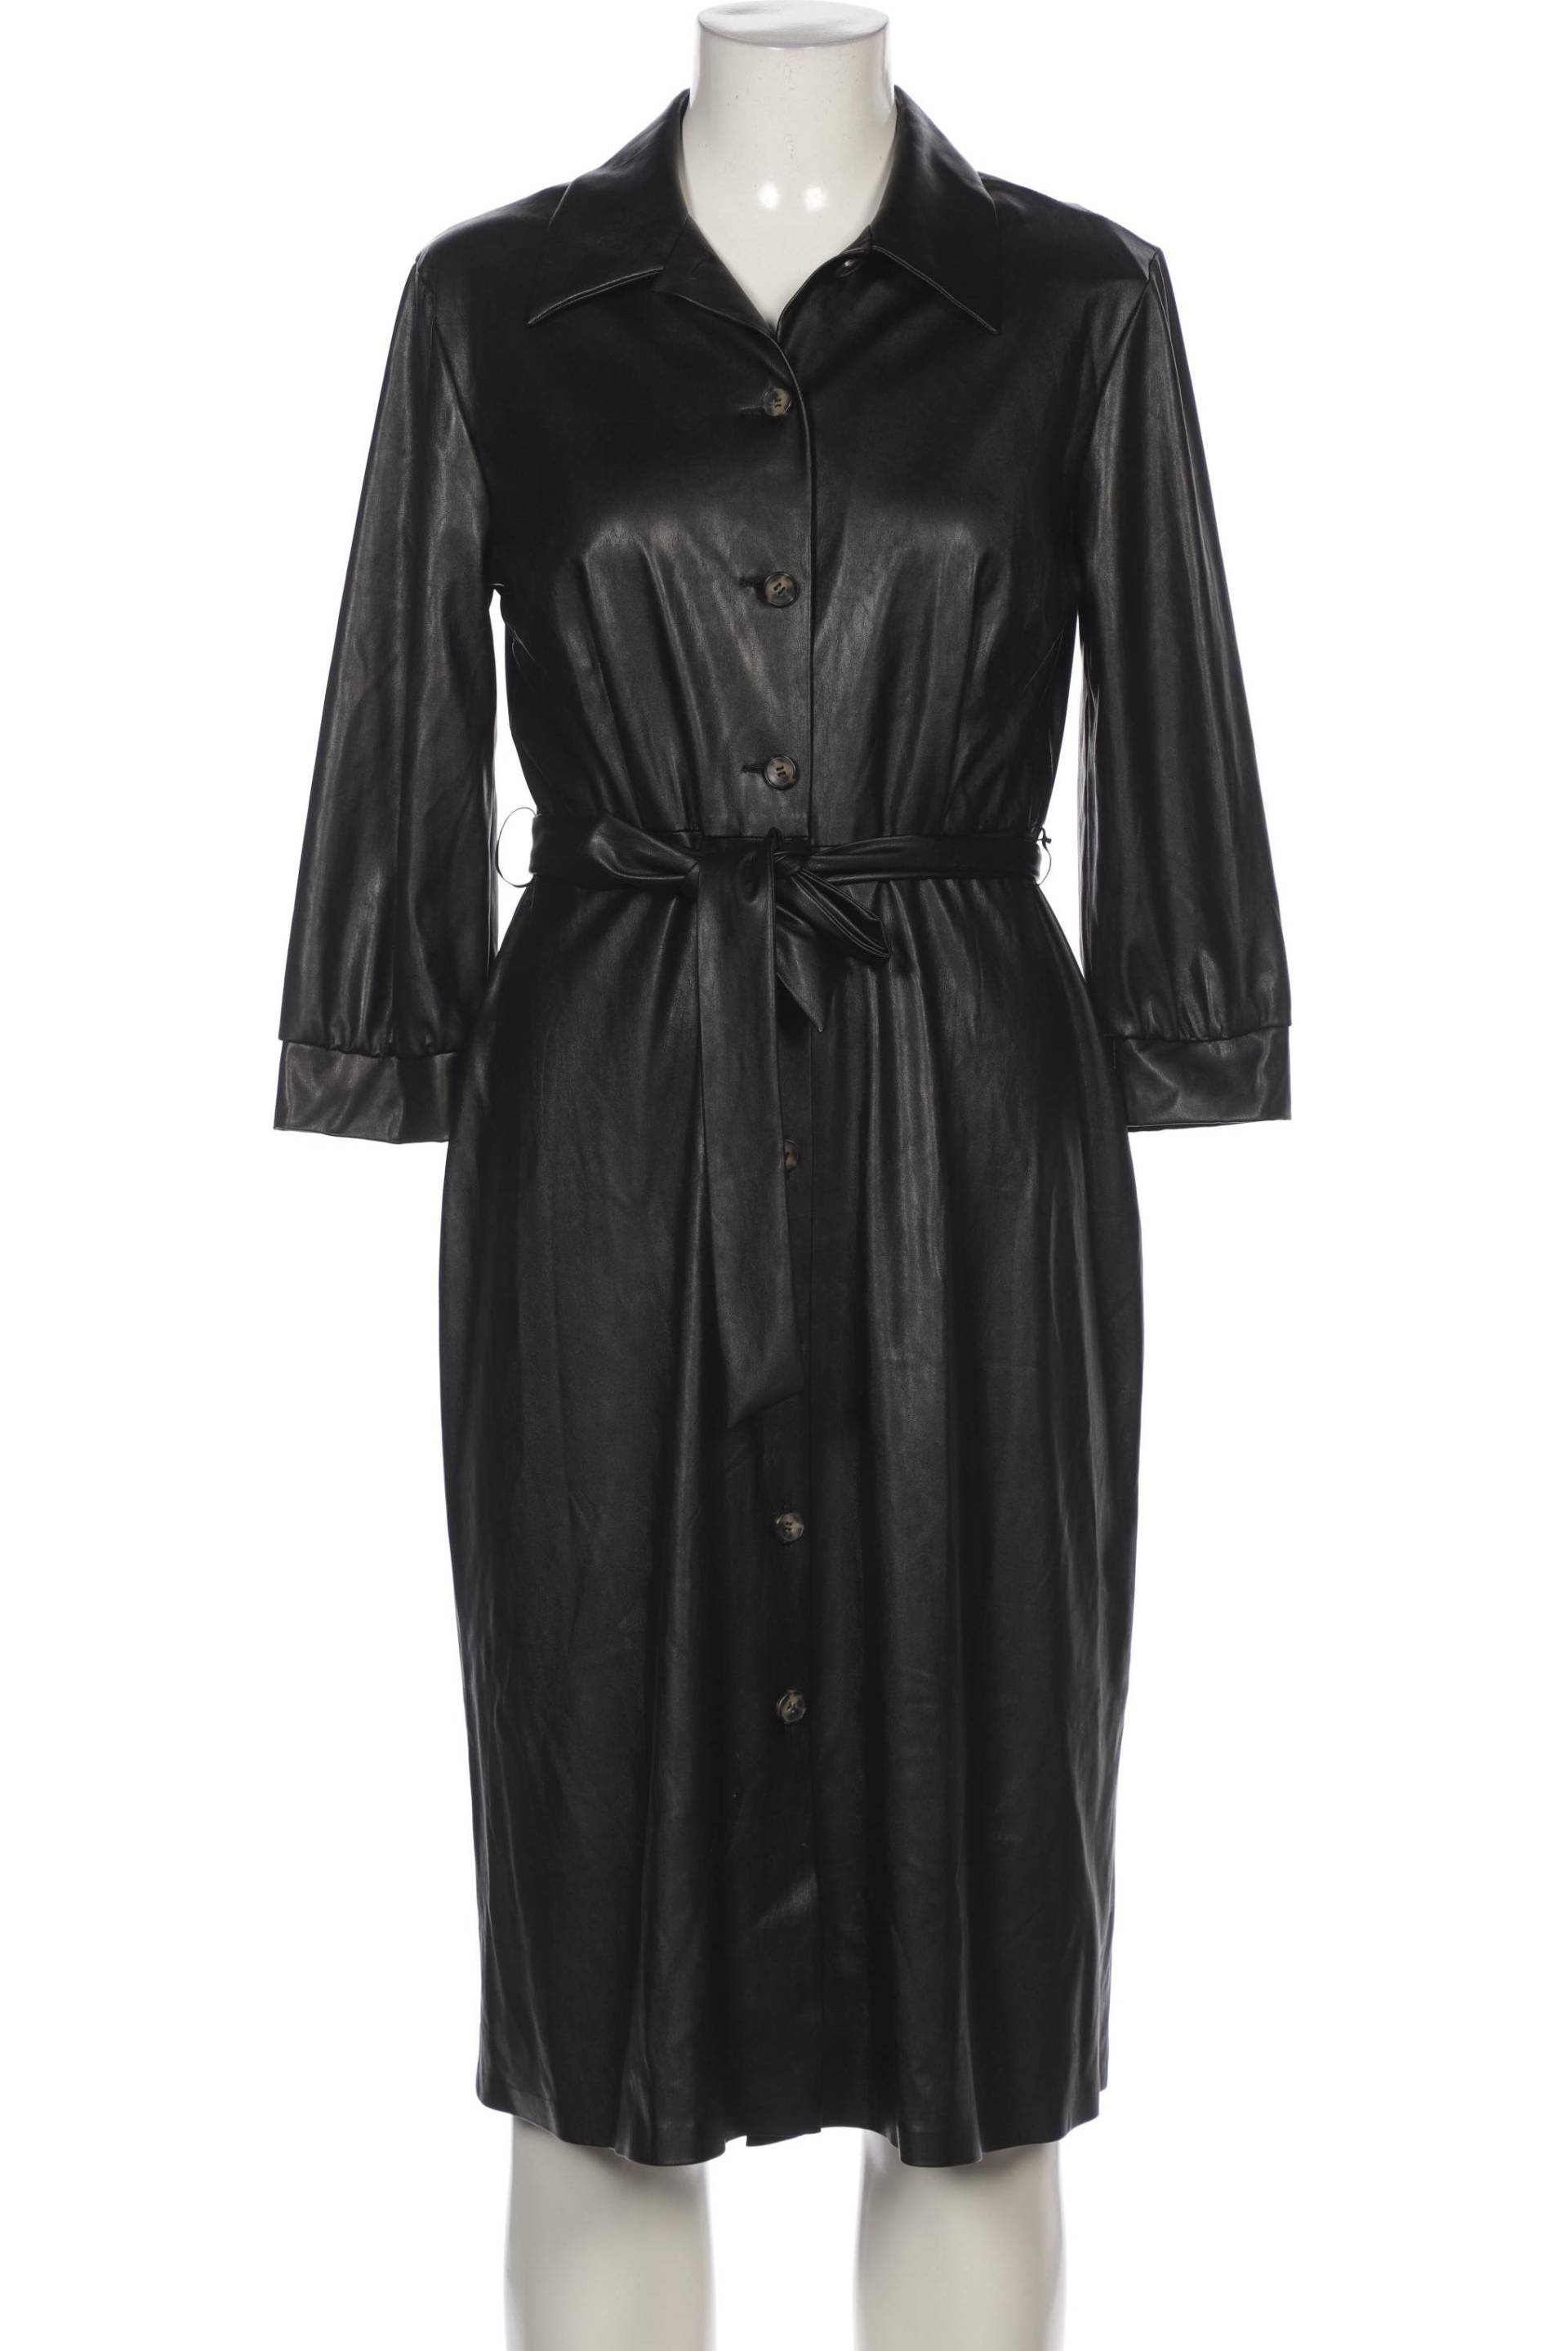 Ana Alcazar Damen Kleid, schwarz, Gr. 38 von Ana Alcazar